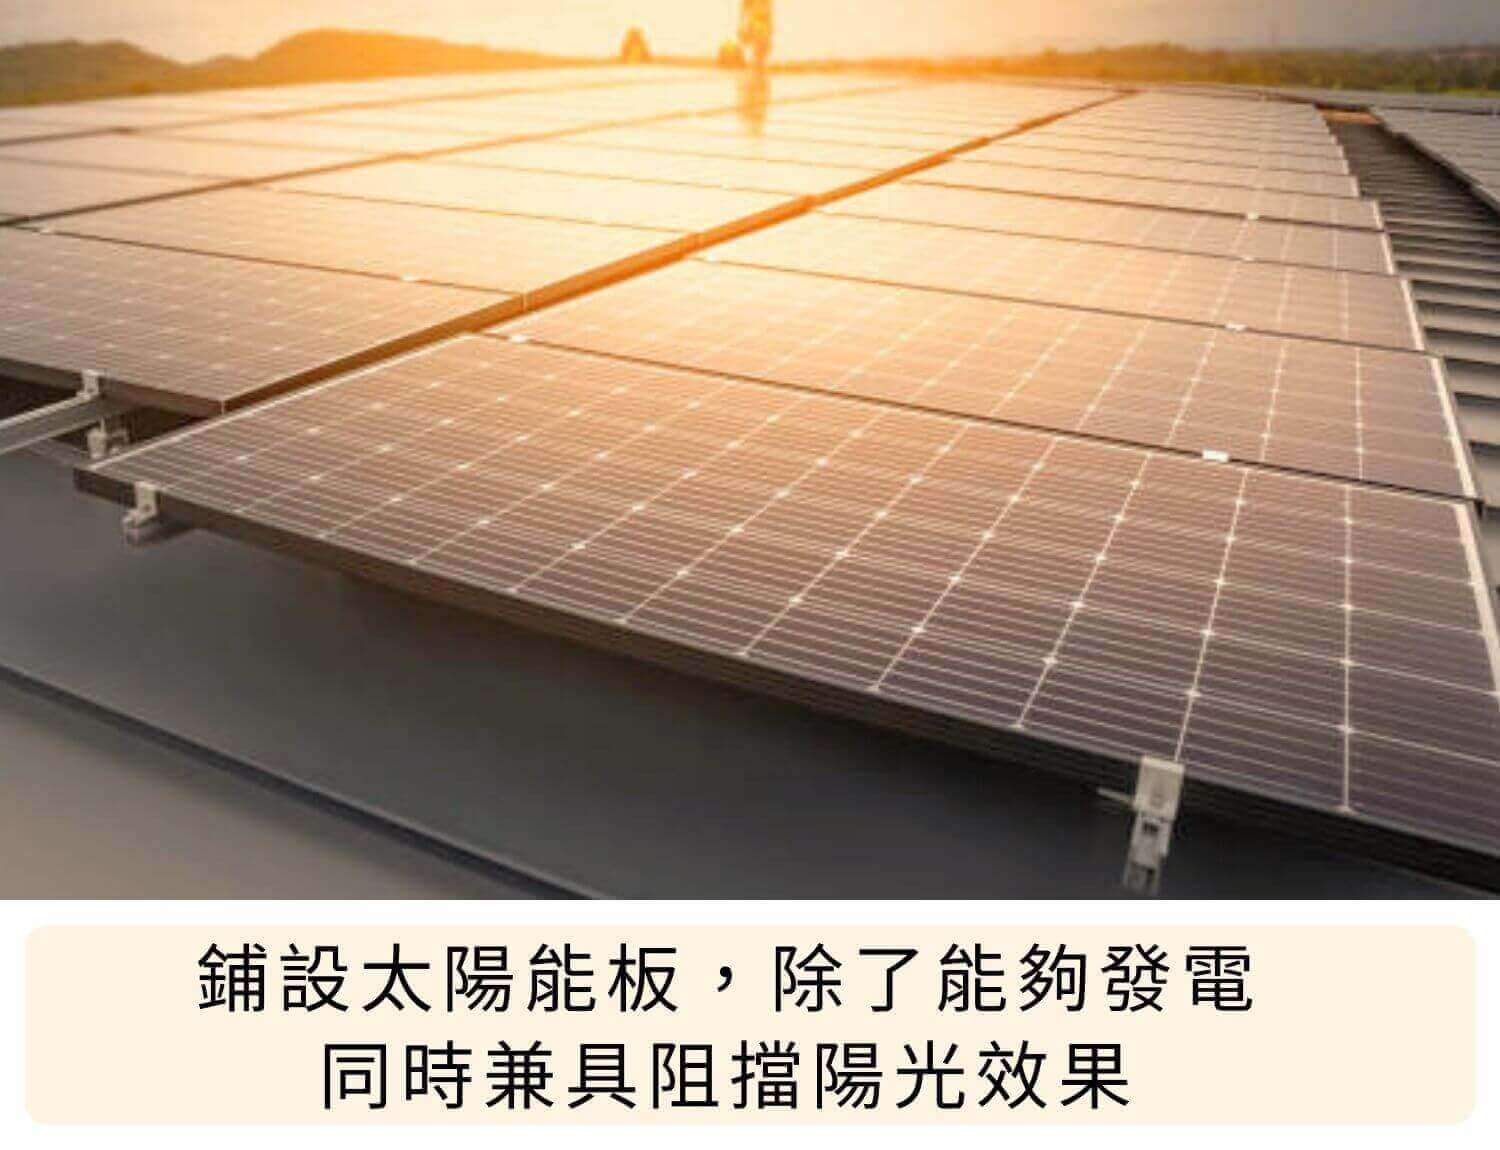 鋪設太陽能板，除了能夠發電，同時兼具阻擋陽光效果